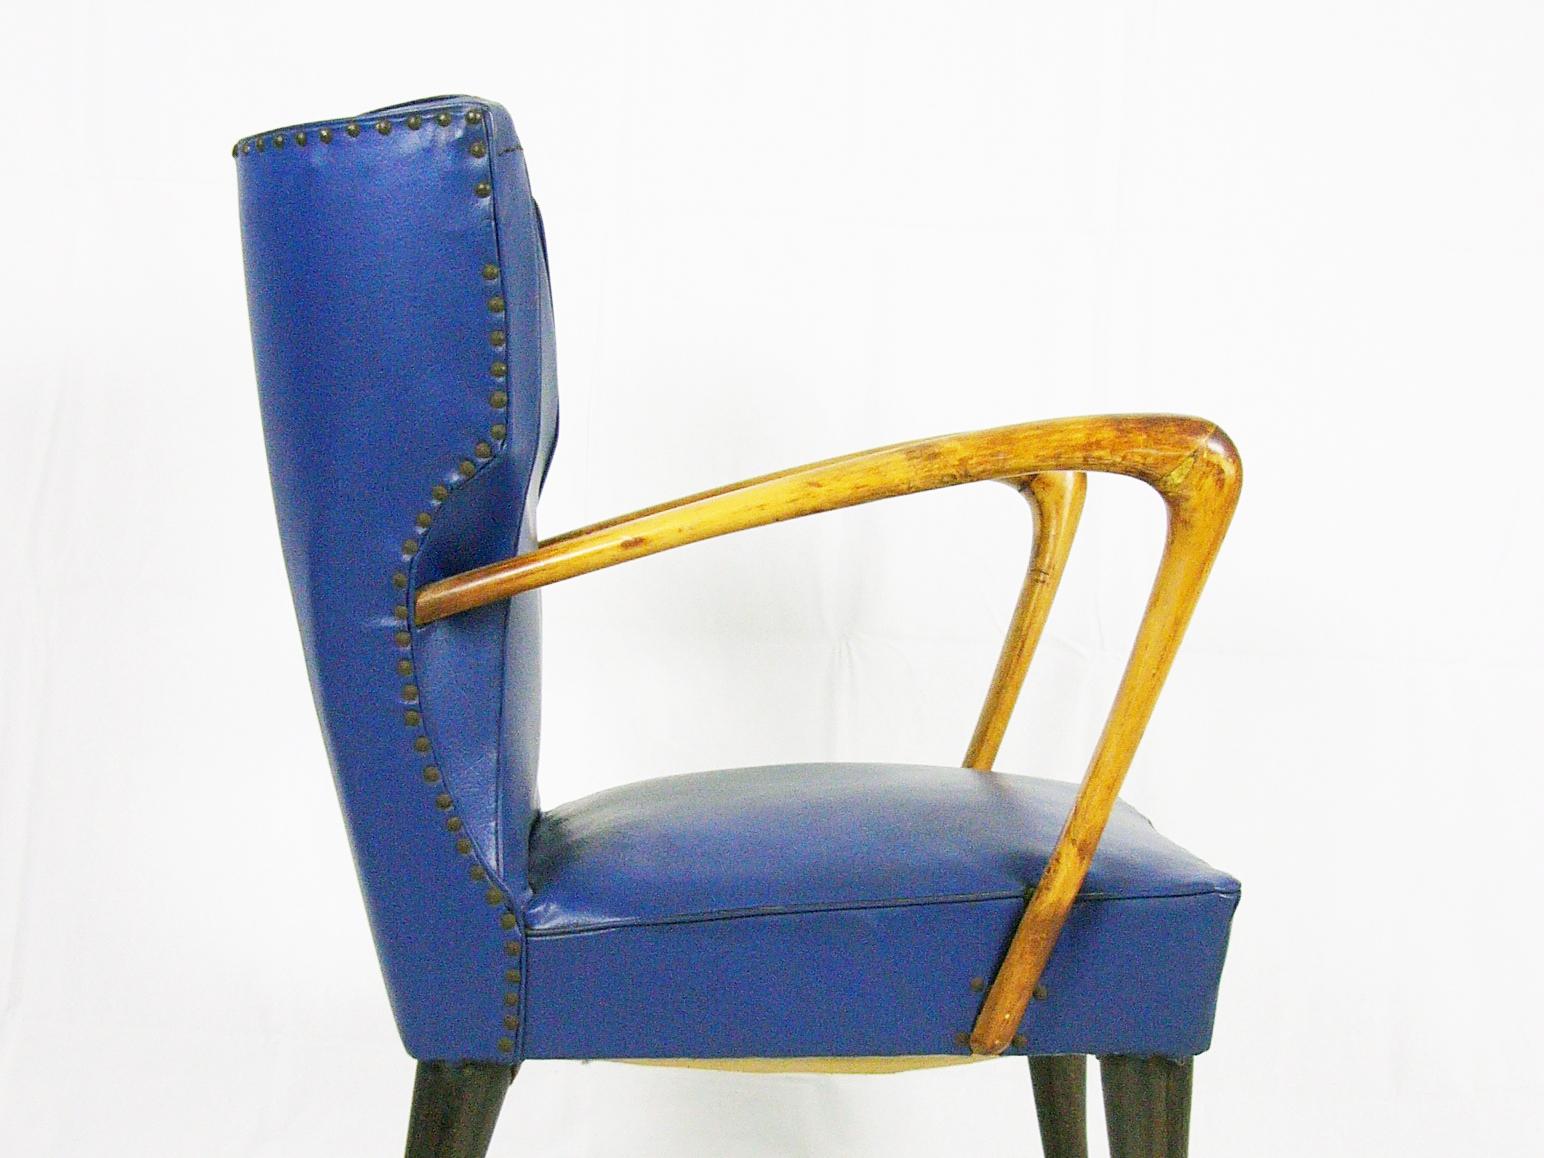 Ce fauteuil a été produit en Italie au début des années 1950. Il est constitué d'une structure en bois avec un accoudoir sculptural et des pieds marron foncé. Le fauteuil est recouvert de skaï bleu. Les conditions extérieures sont bonnes, mais le